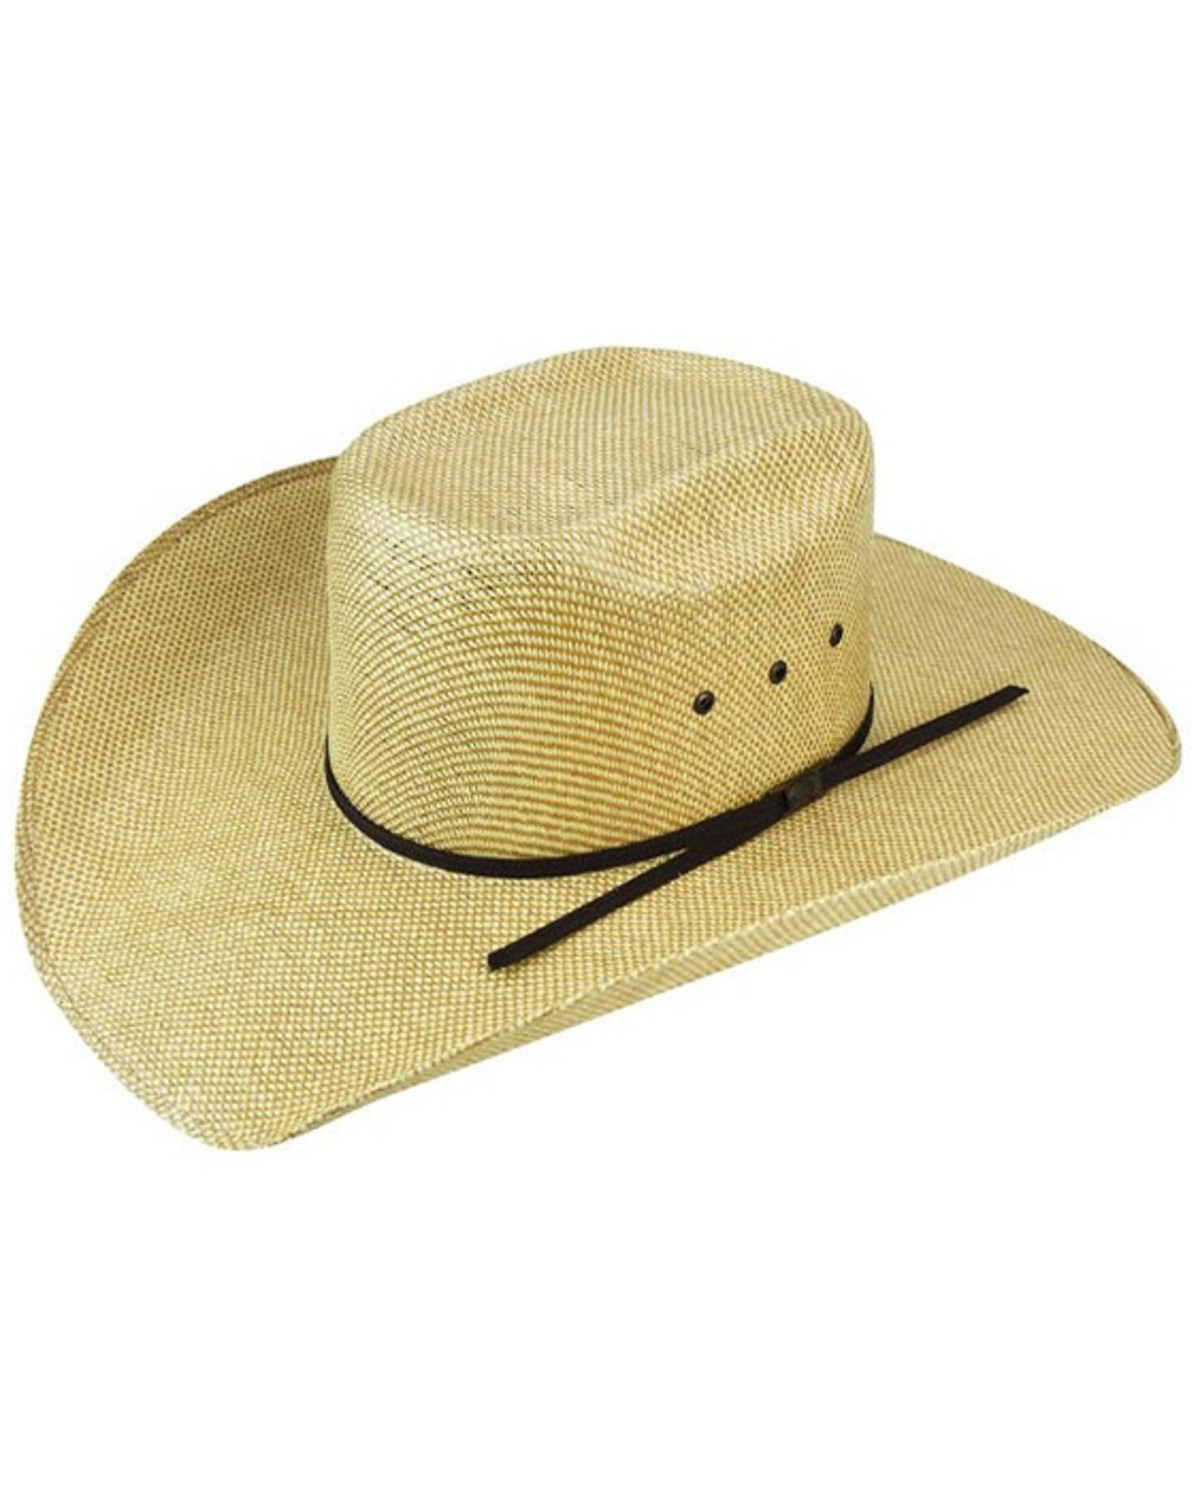 Bailey Doud Straw Cowboy Hat